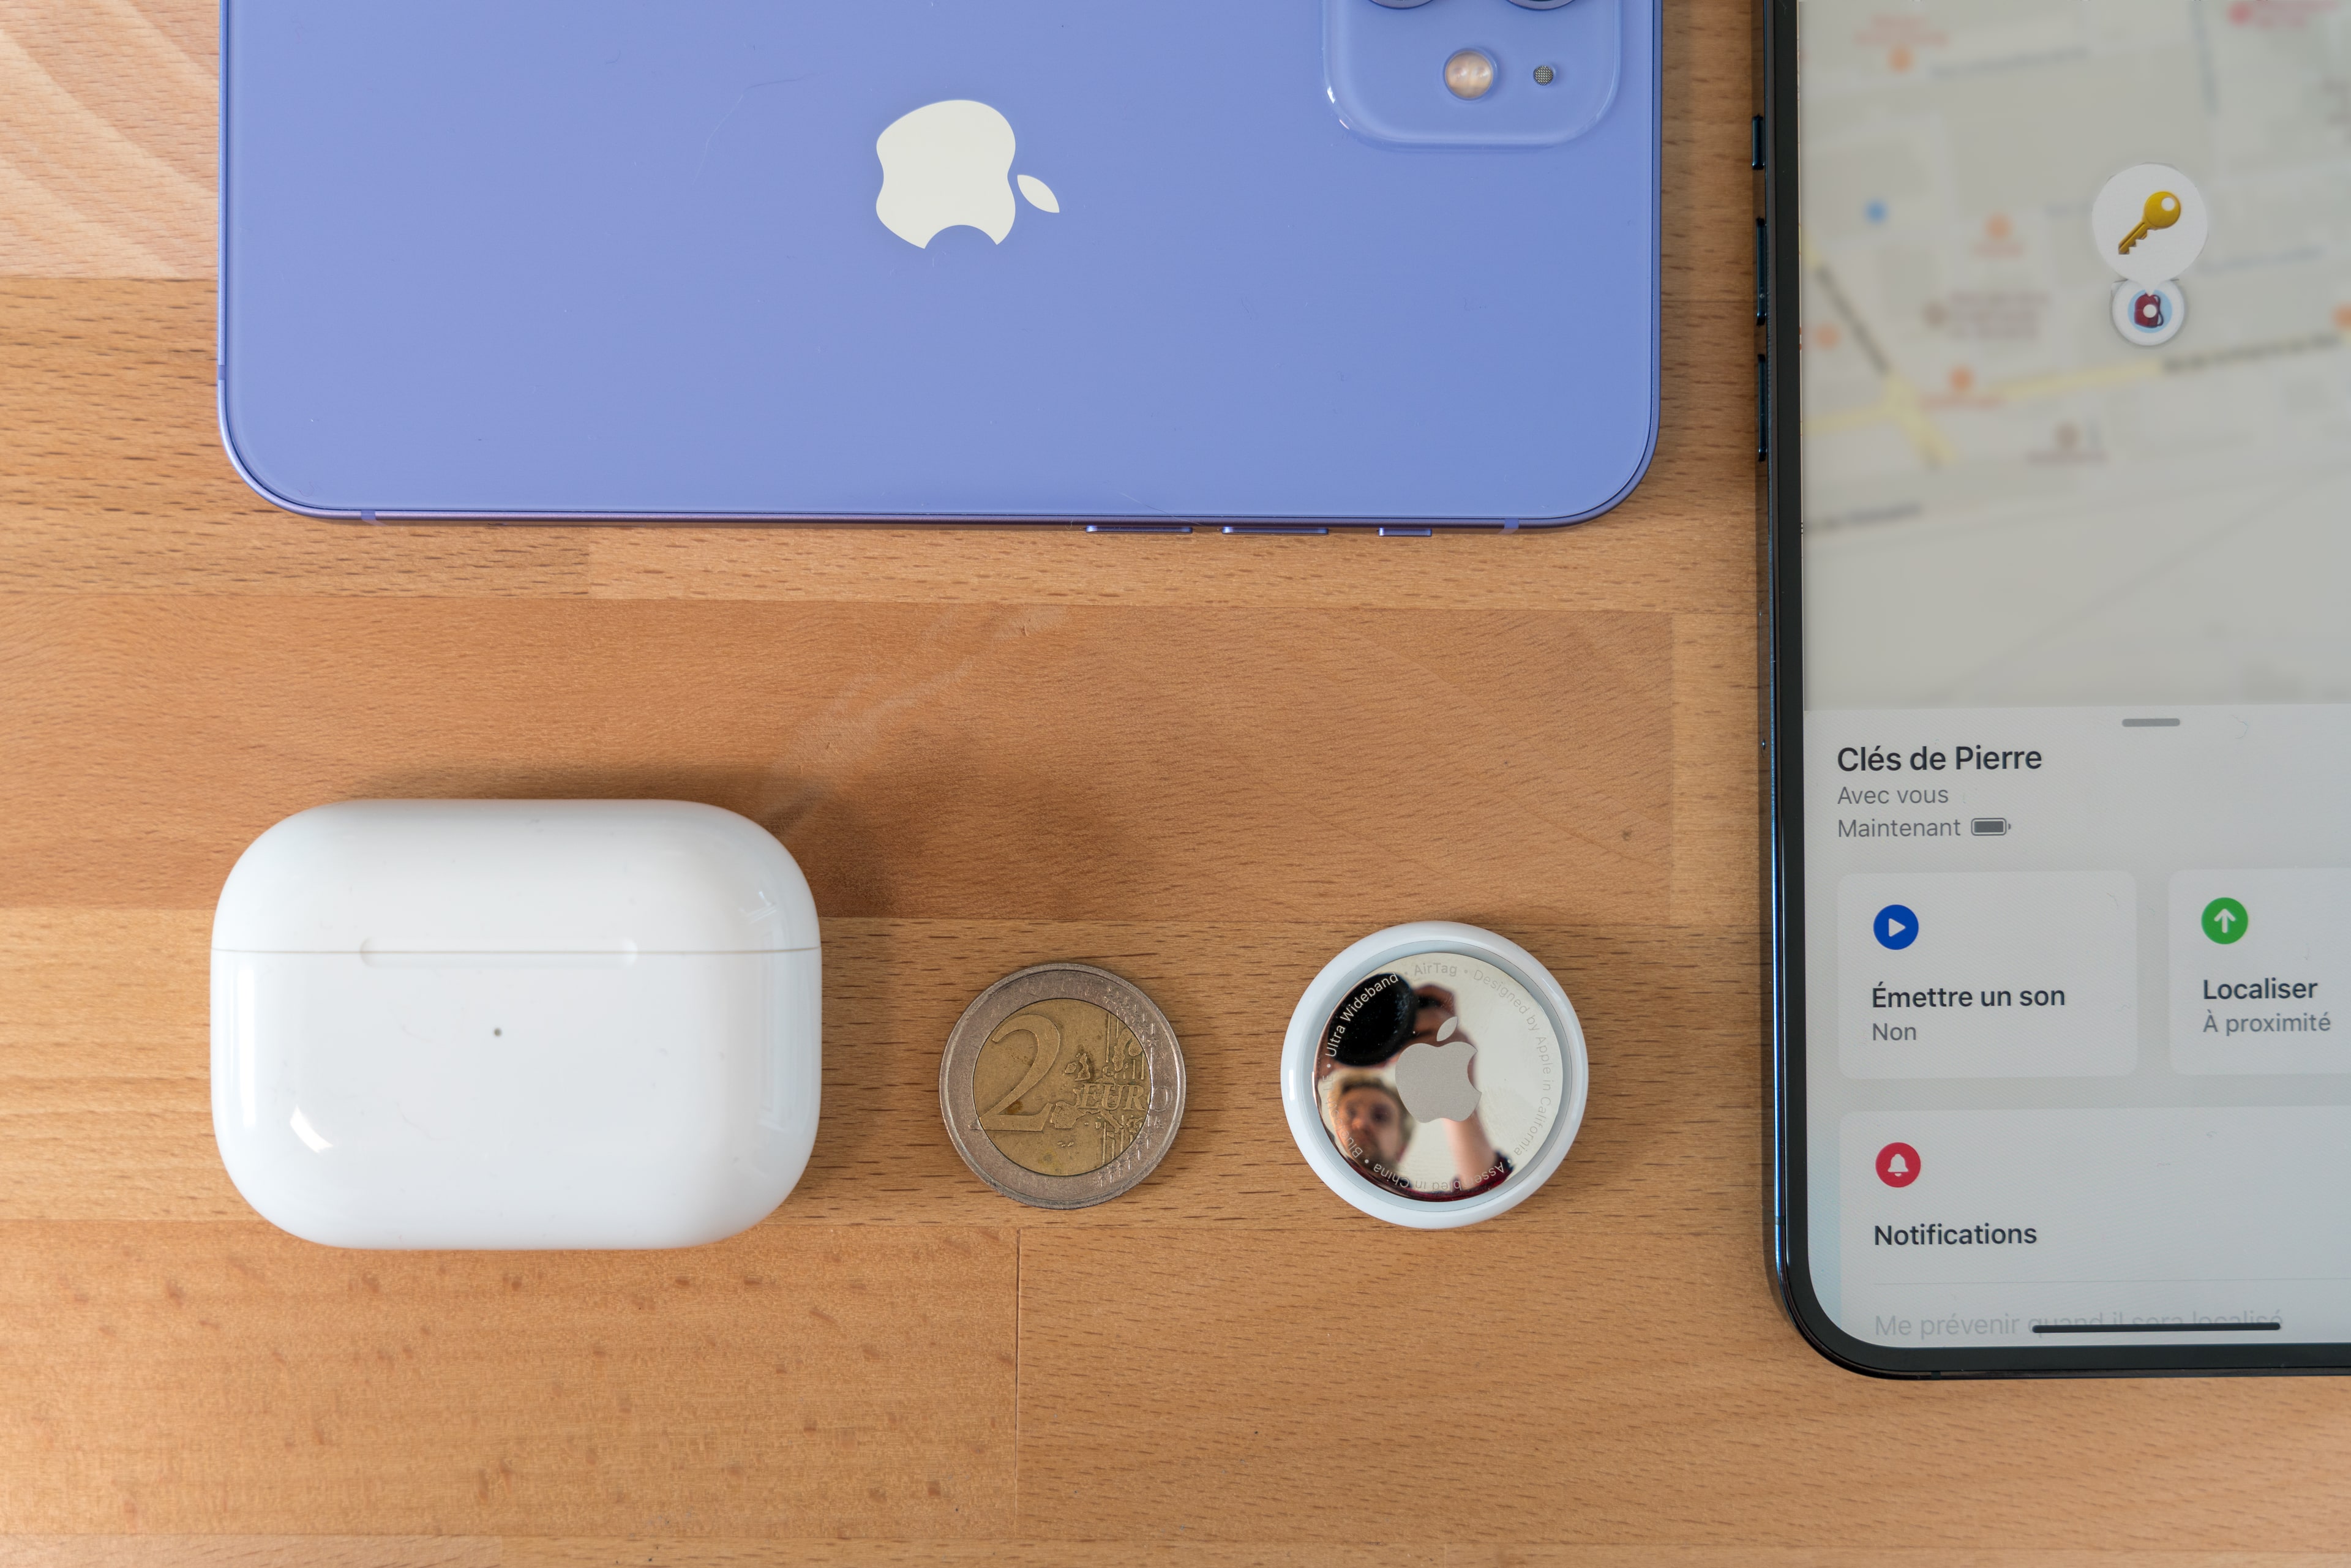 Les AirTags d'Apple déjà hackés par des chercheurs qui en modifient l'adresse du NFC